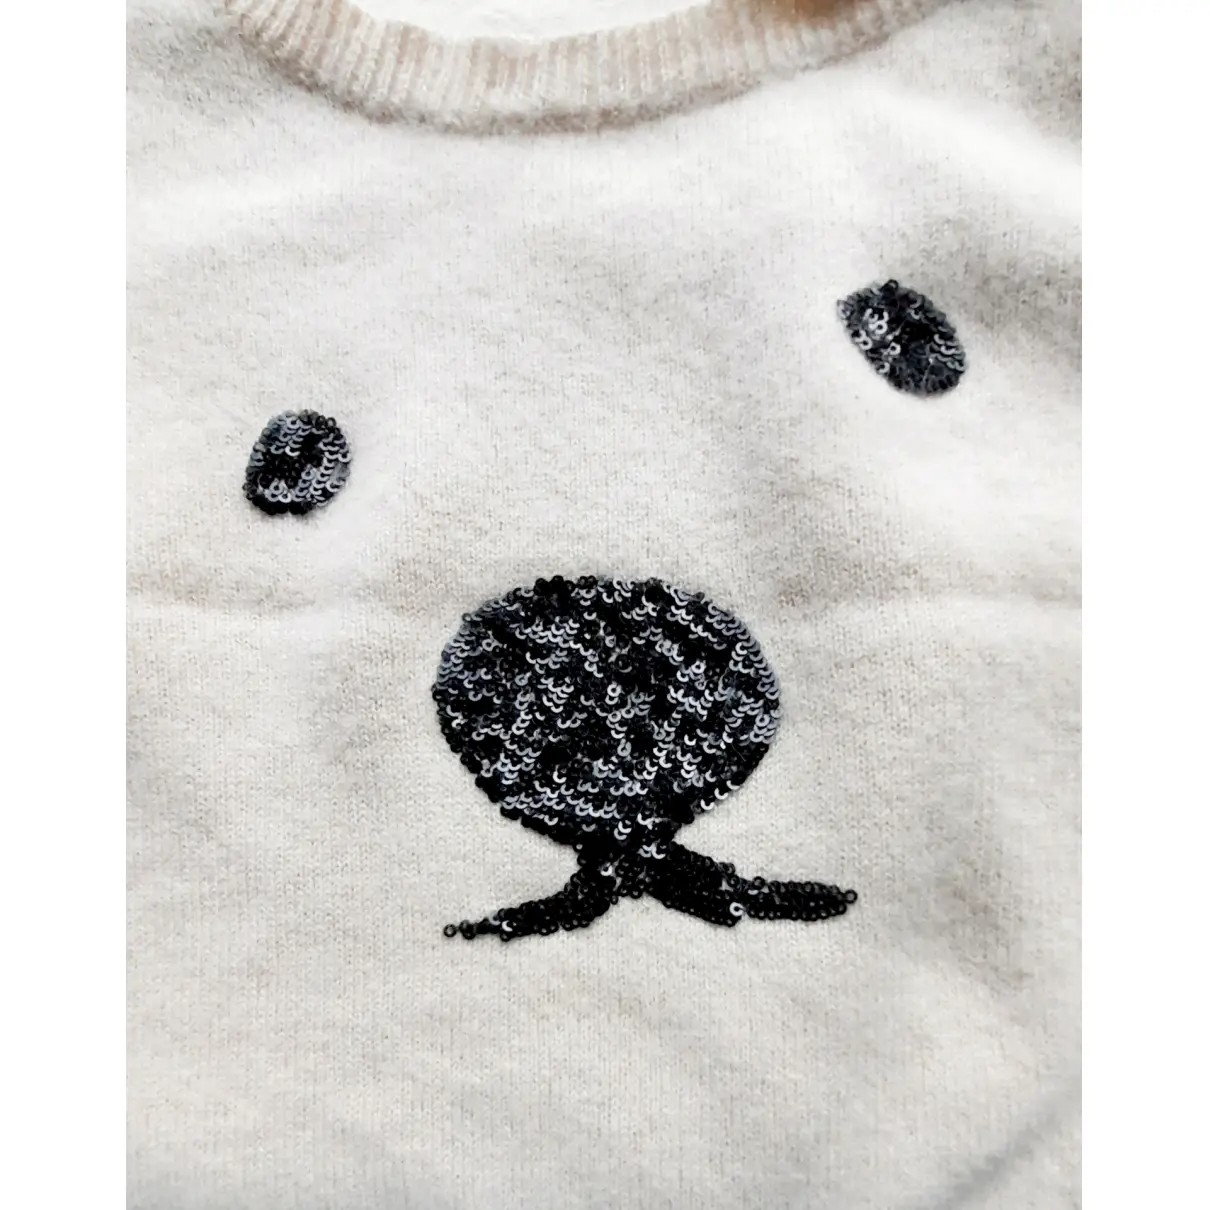 Wool jumper by Malene Birger